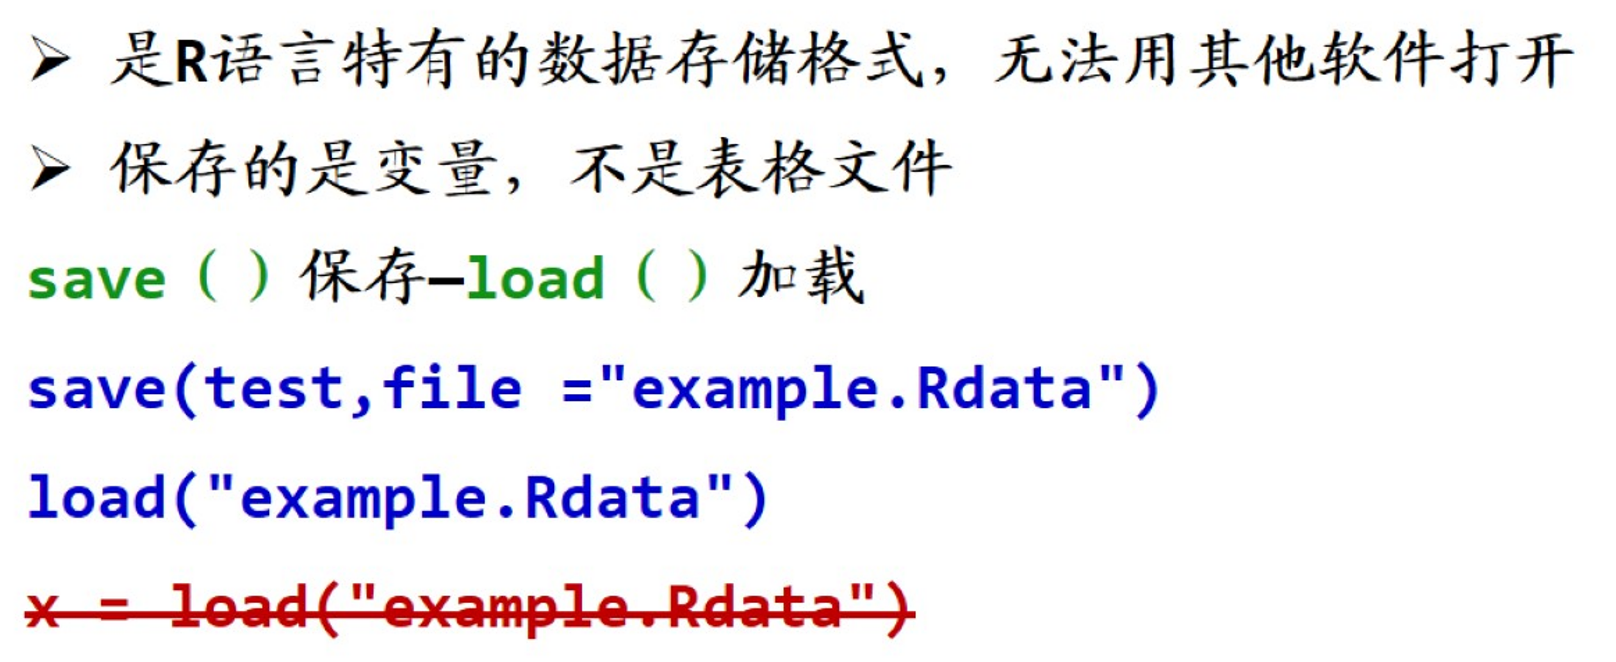 Rdata是R特有的数据保存格式